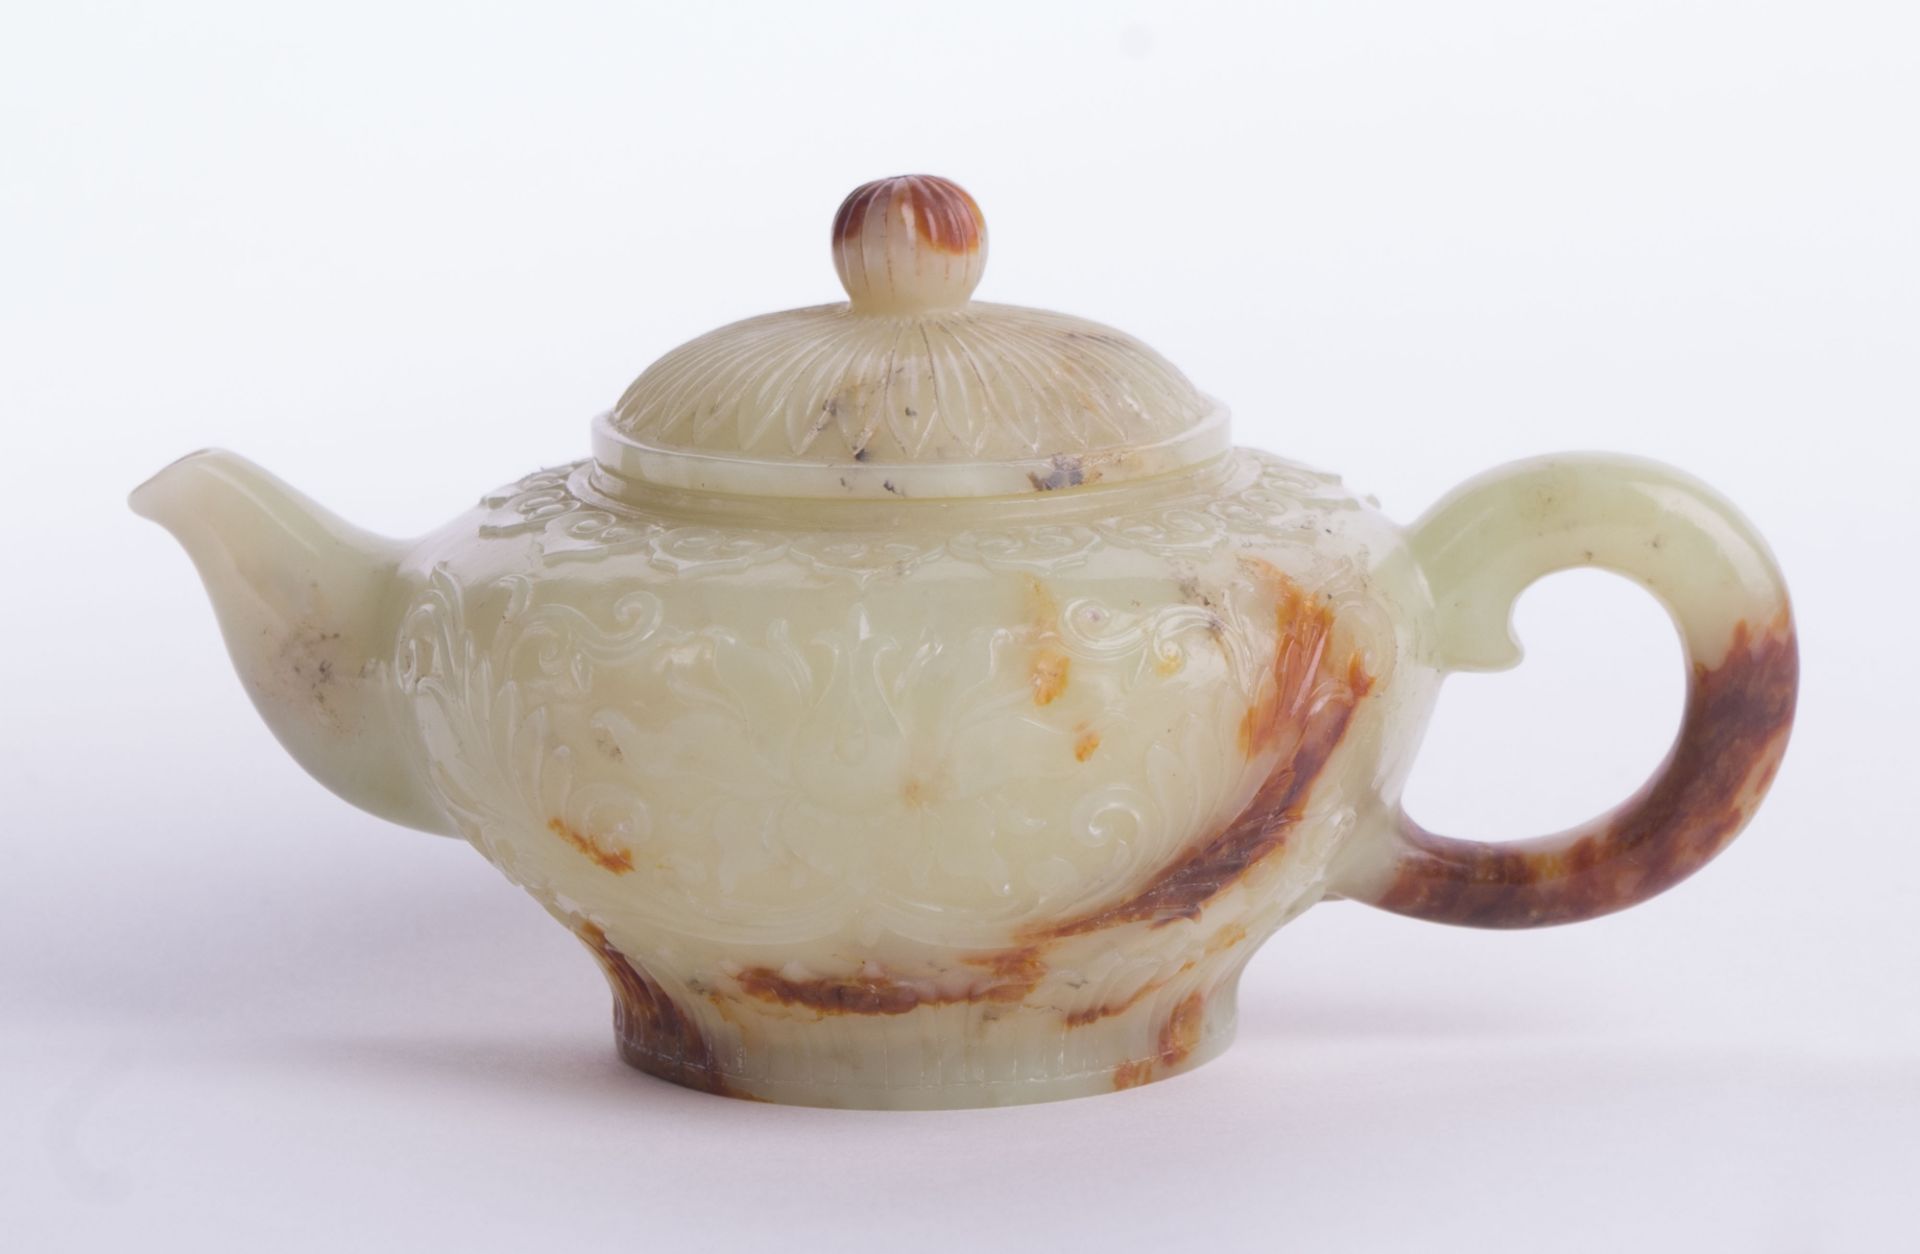 Kleine Jade-Teekanne China um 1900späte Qing Dynastie oder frühe Republikperiode, umlaufend sehr